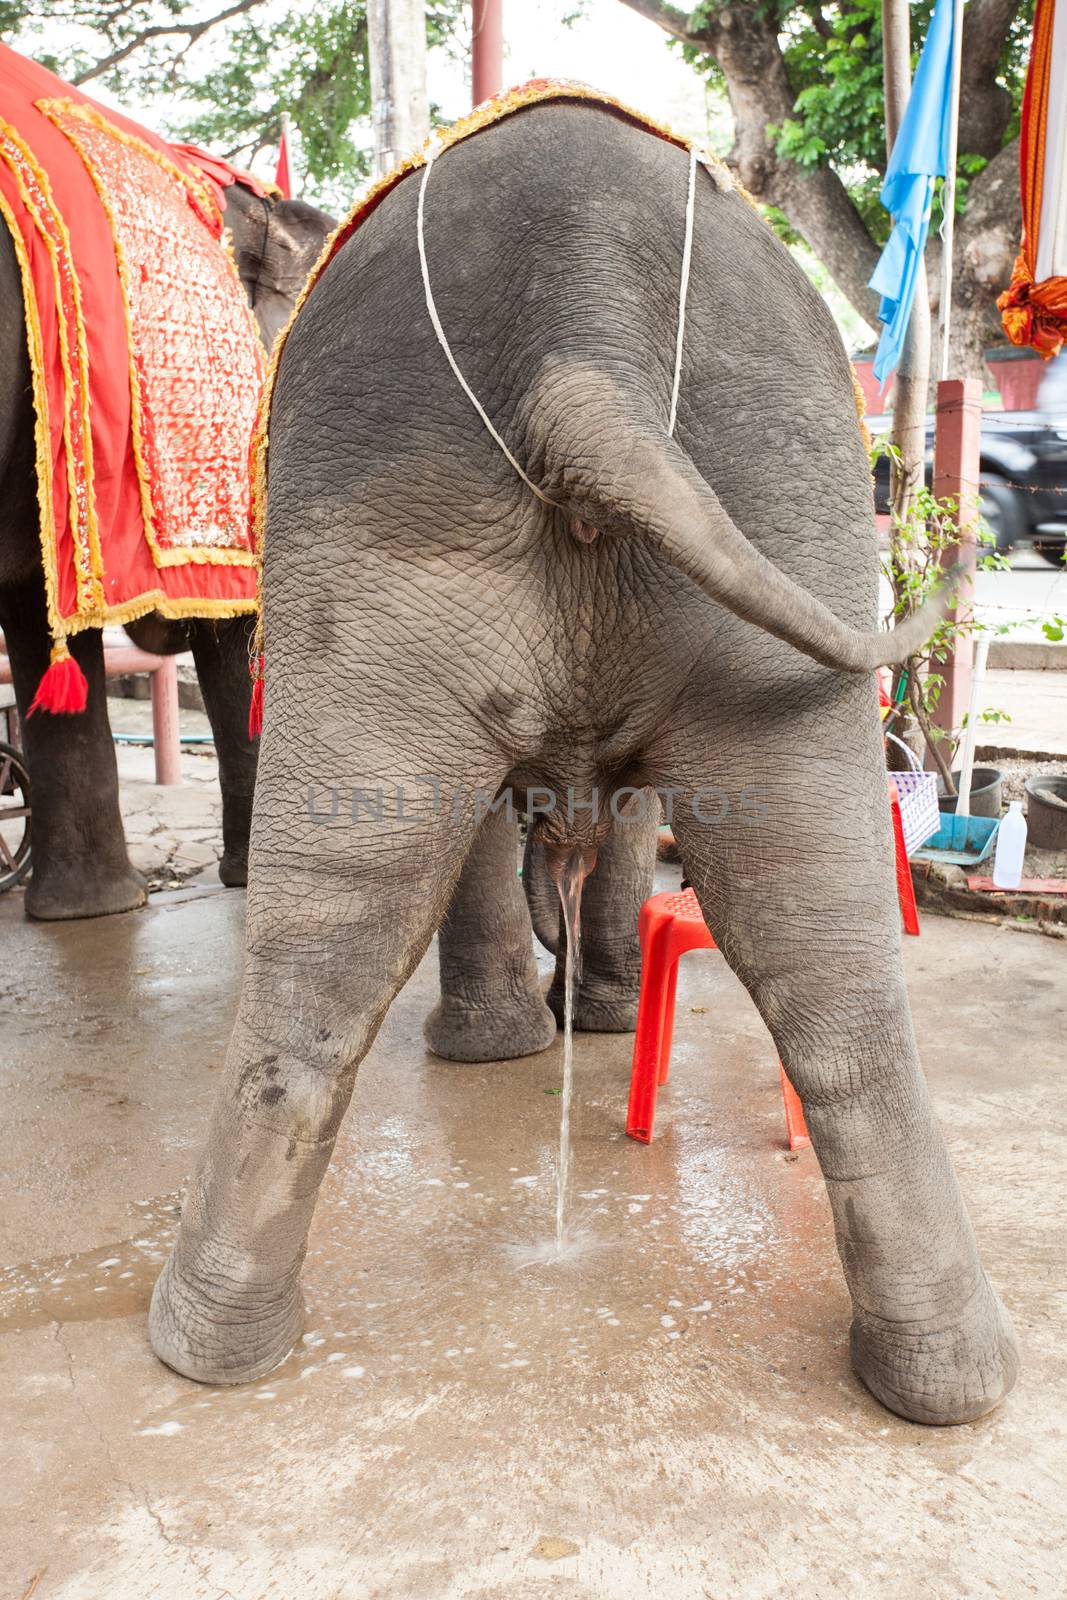 elephant taking a leak